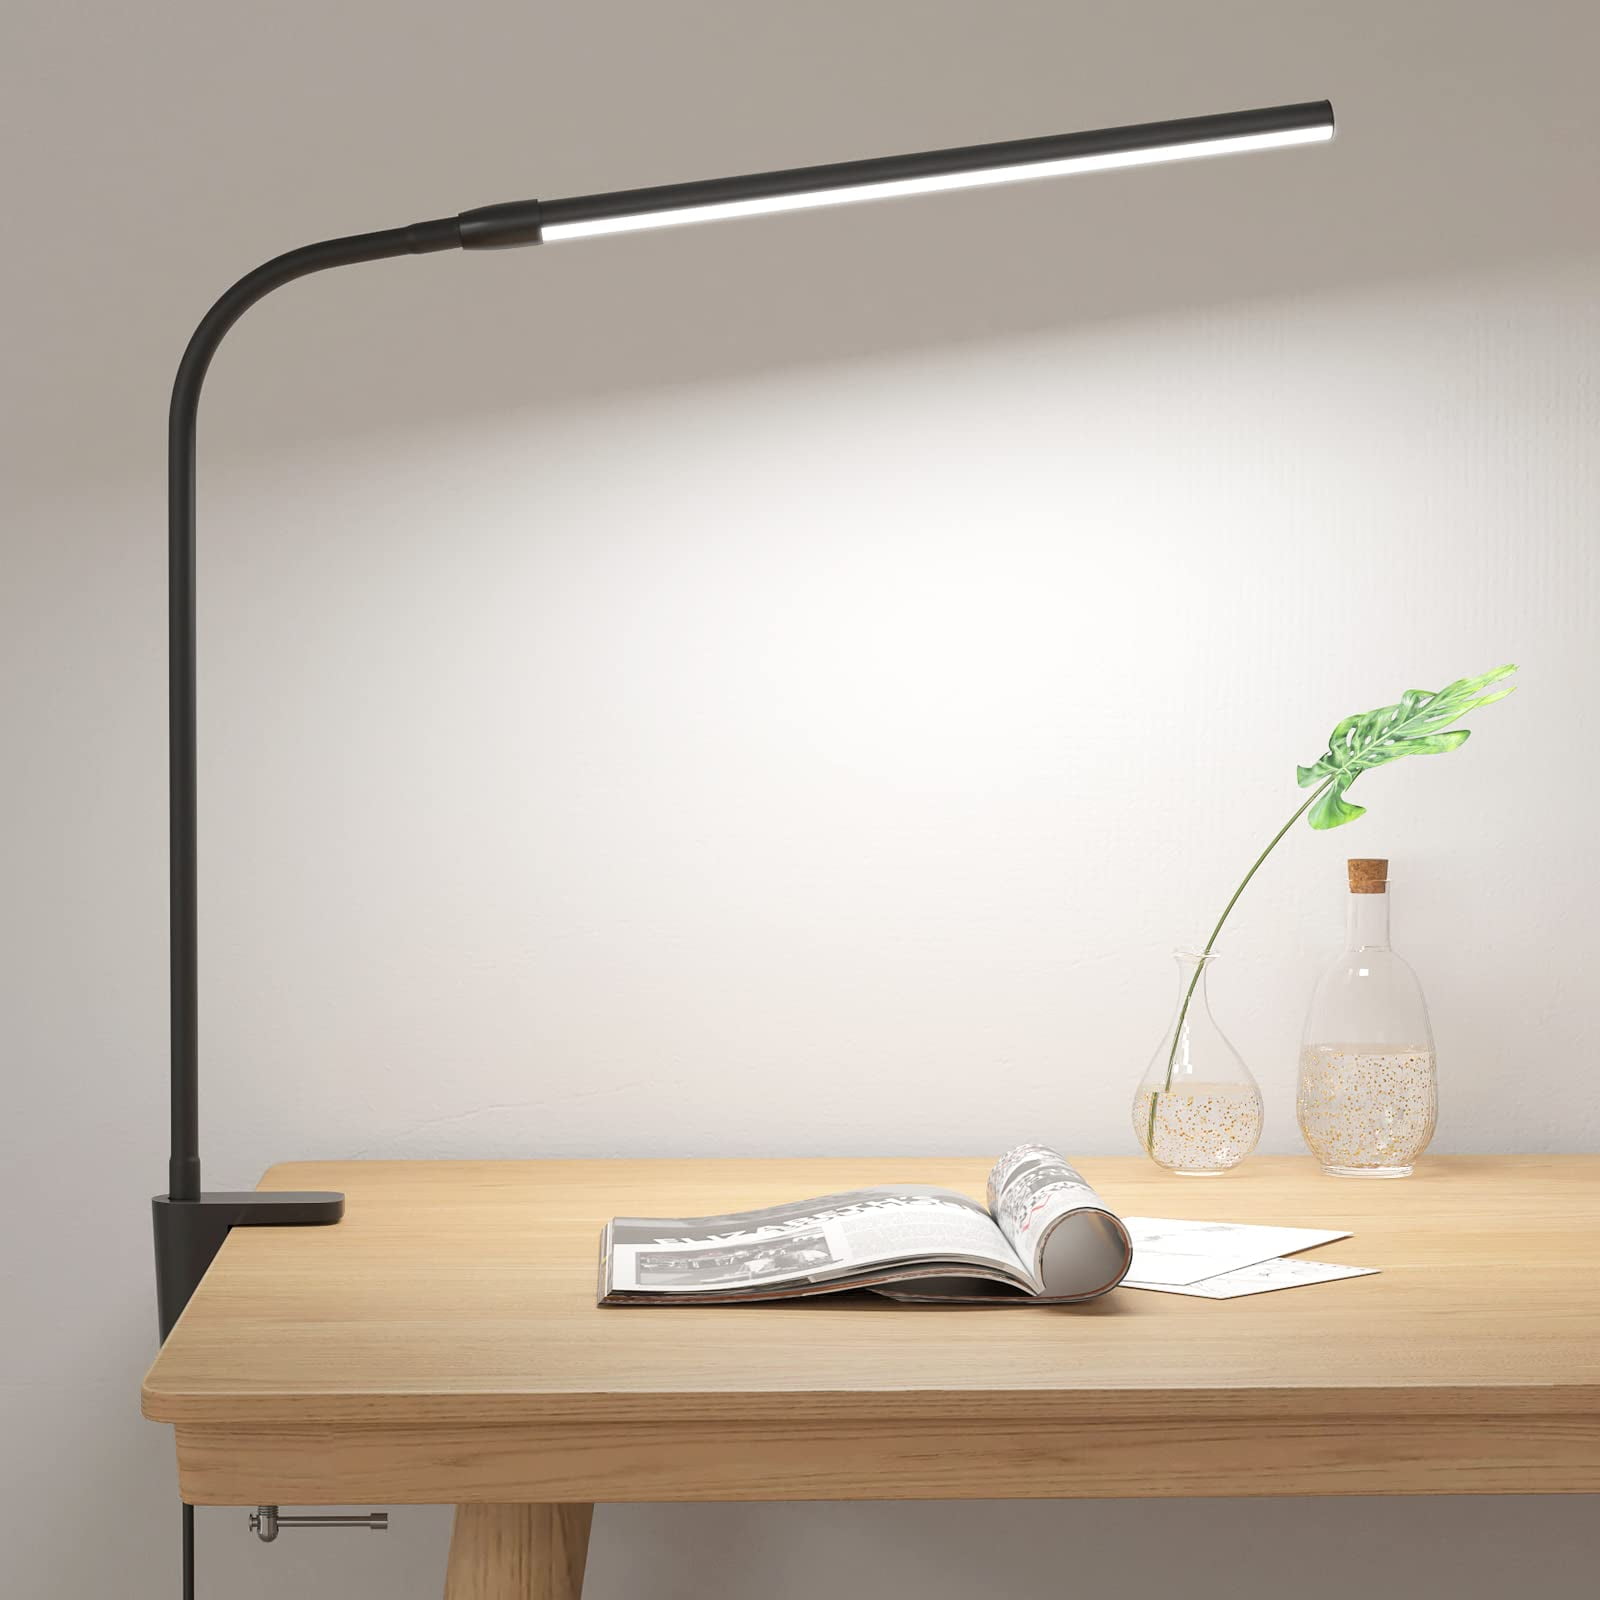 Le Pro - Professional Maxi Lamp